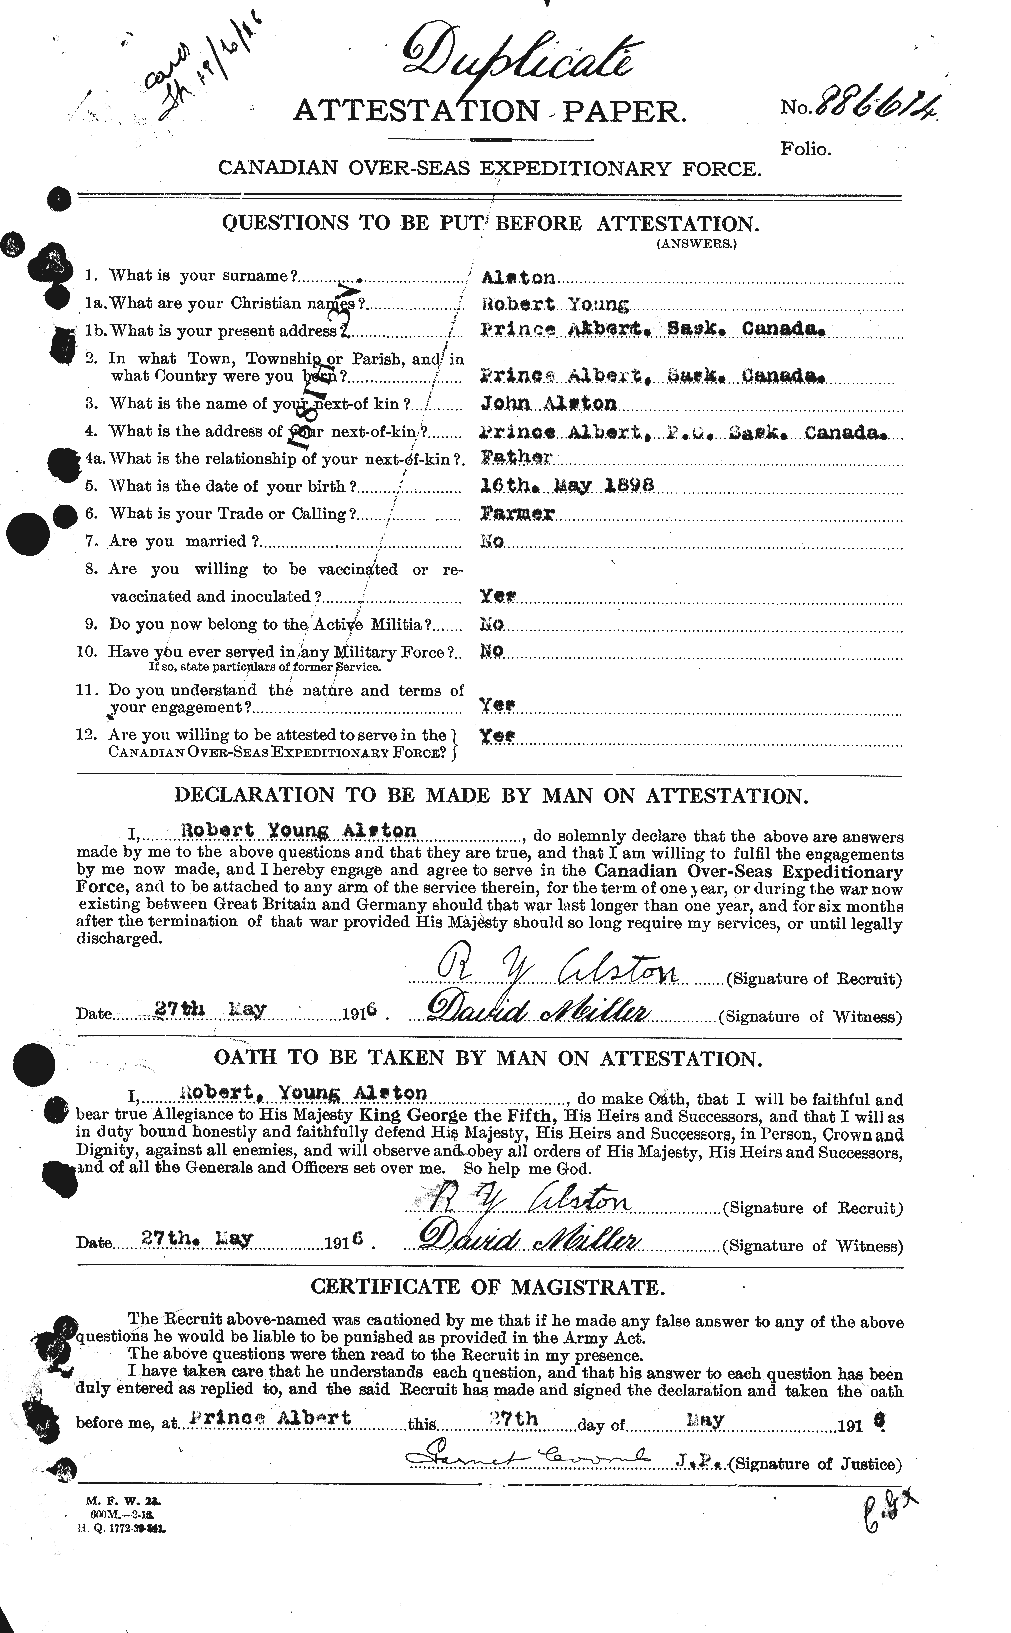 Dossiers du Personnel de la Première Guerre mondiale - CEC 208162a